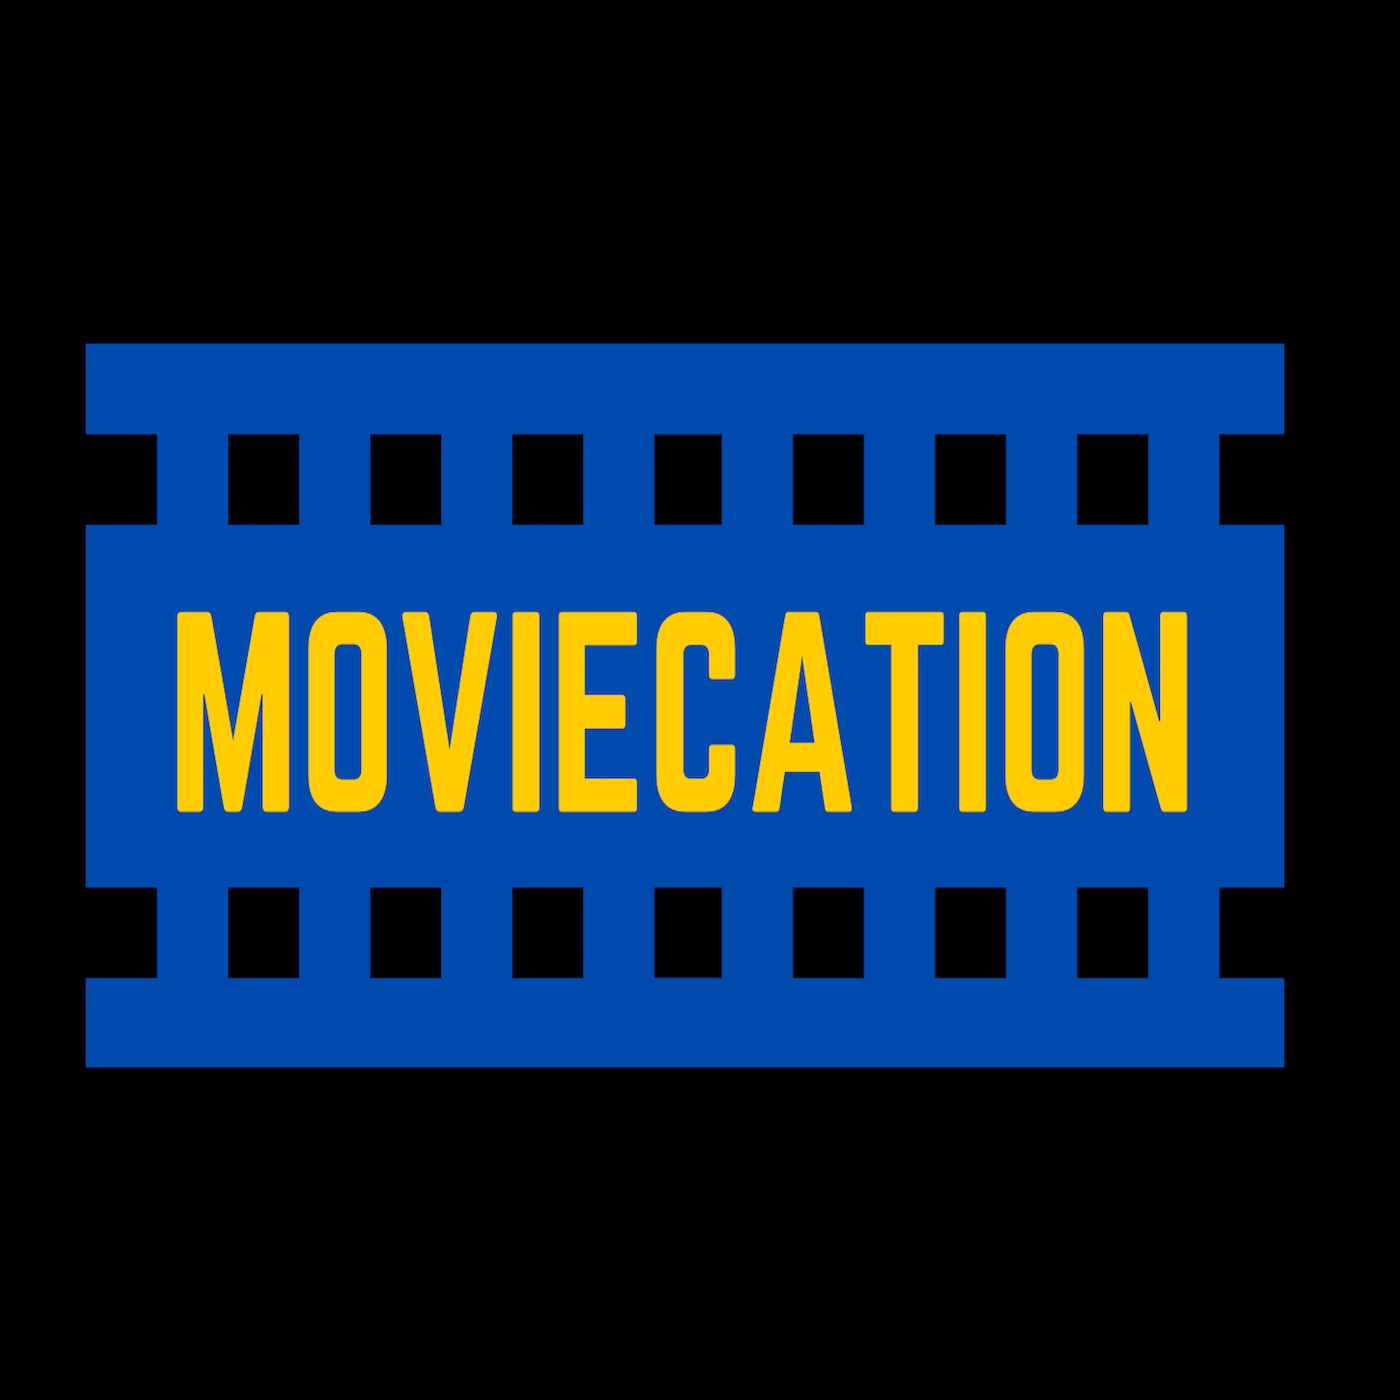 Moviecation